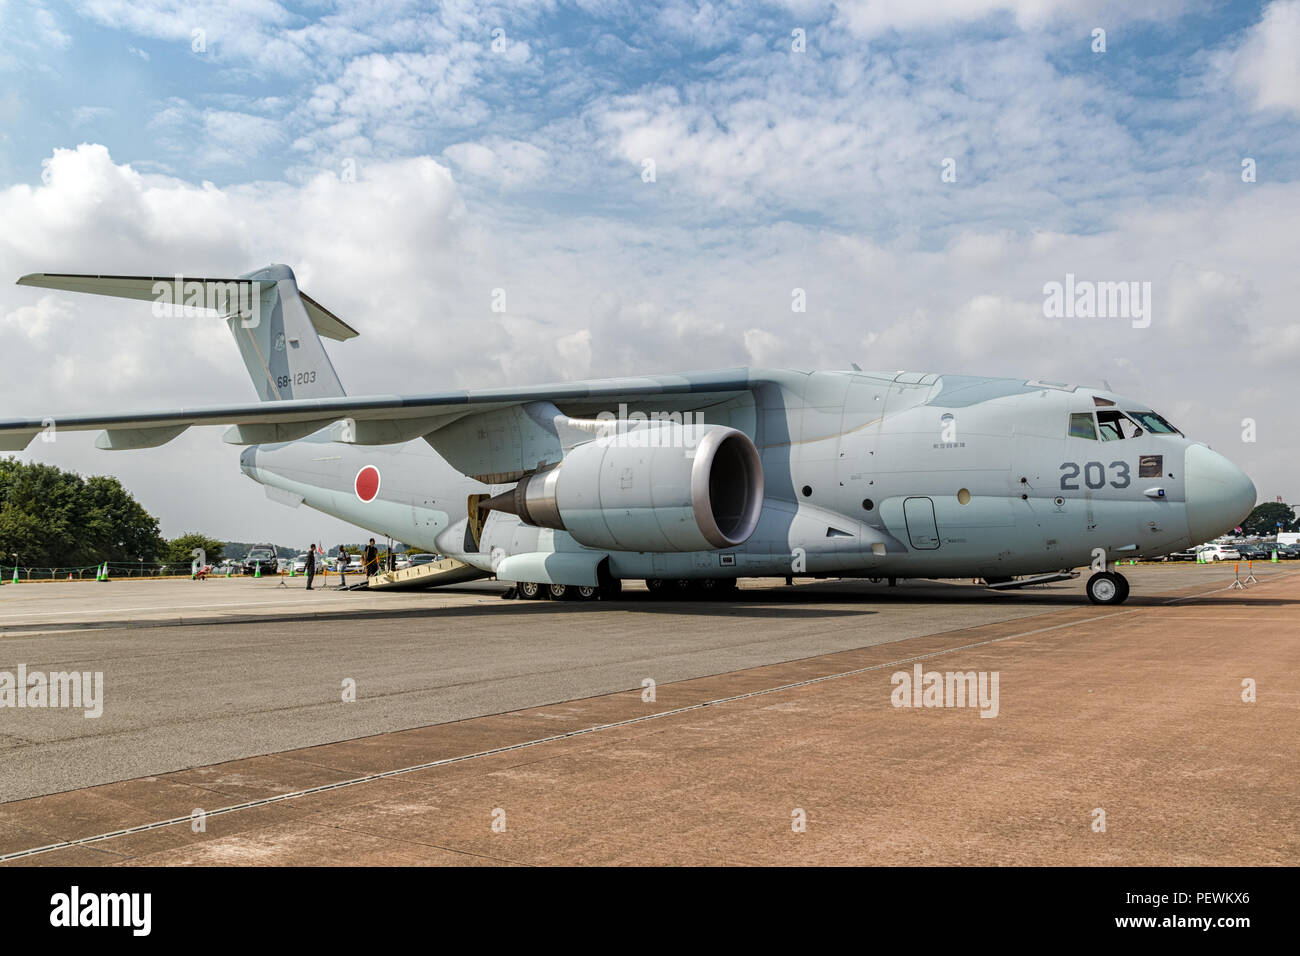 FAIRFORD, ENGLAND - May 13, 2018: Japanische Verteidigung-kraft Kawasaki C-2-Flugzeuge, die auf dem Rollfeld des RAF Fairford Airbase. Stockfoto